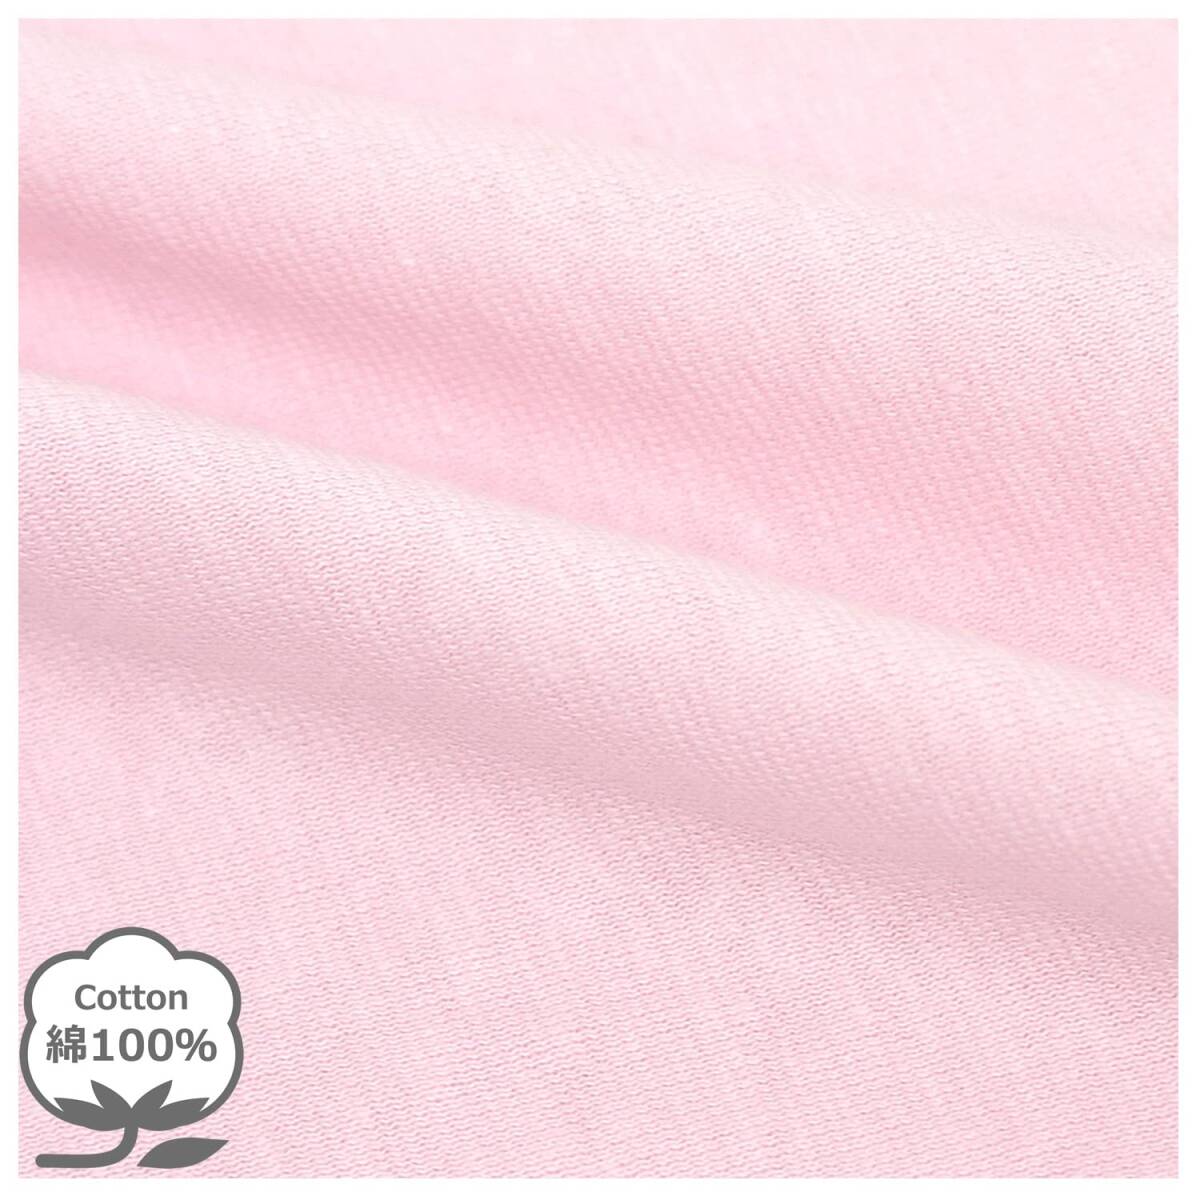 メリーナイト 枕カバー 無地カラー ピンク 約43×63cm ファスナー式 まくらが入れやすい 綿100% ニット素材 ピタッと装着 洗える オ_画像3